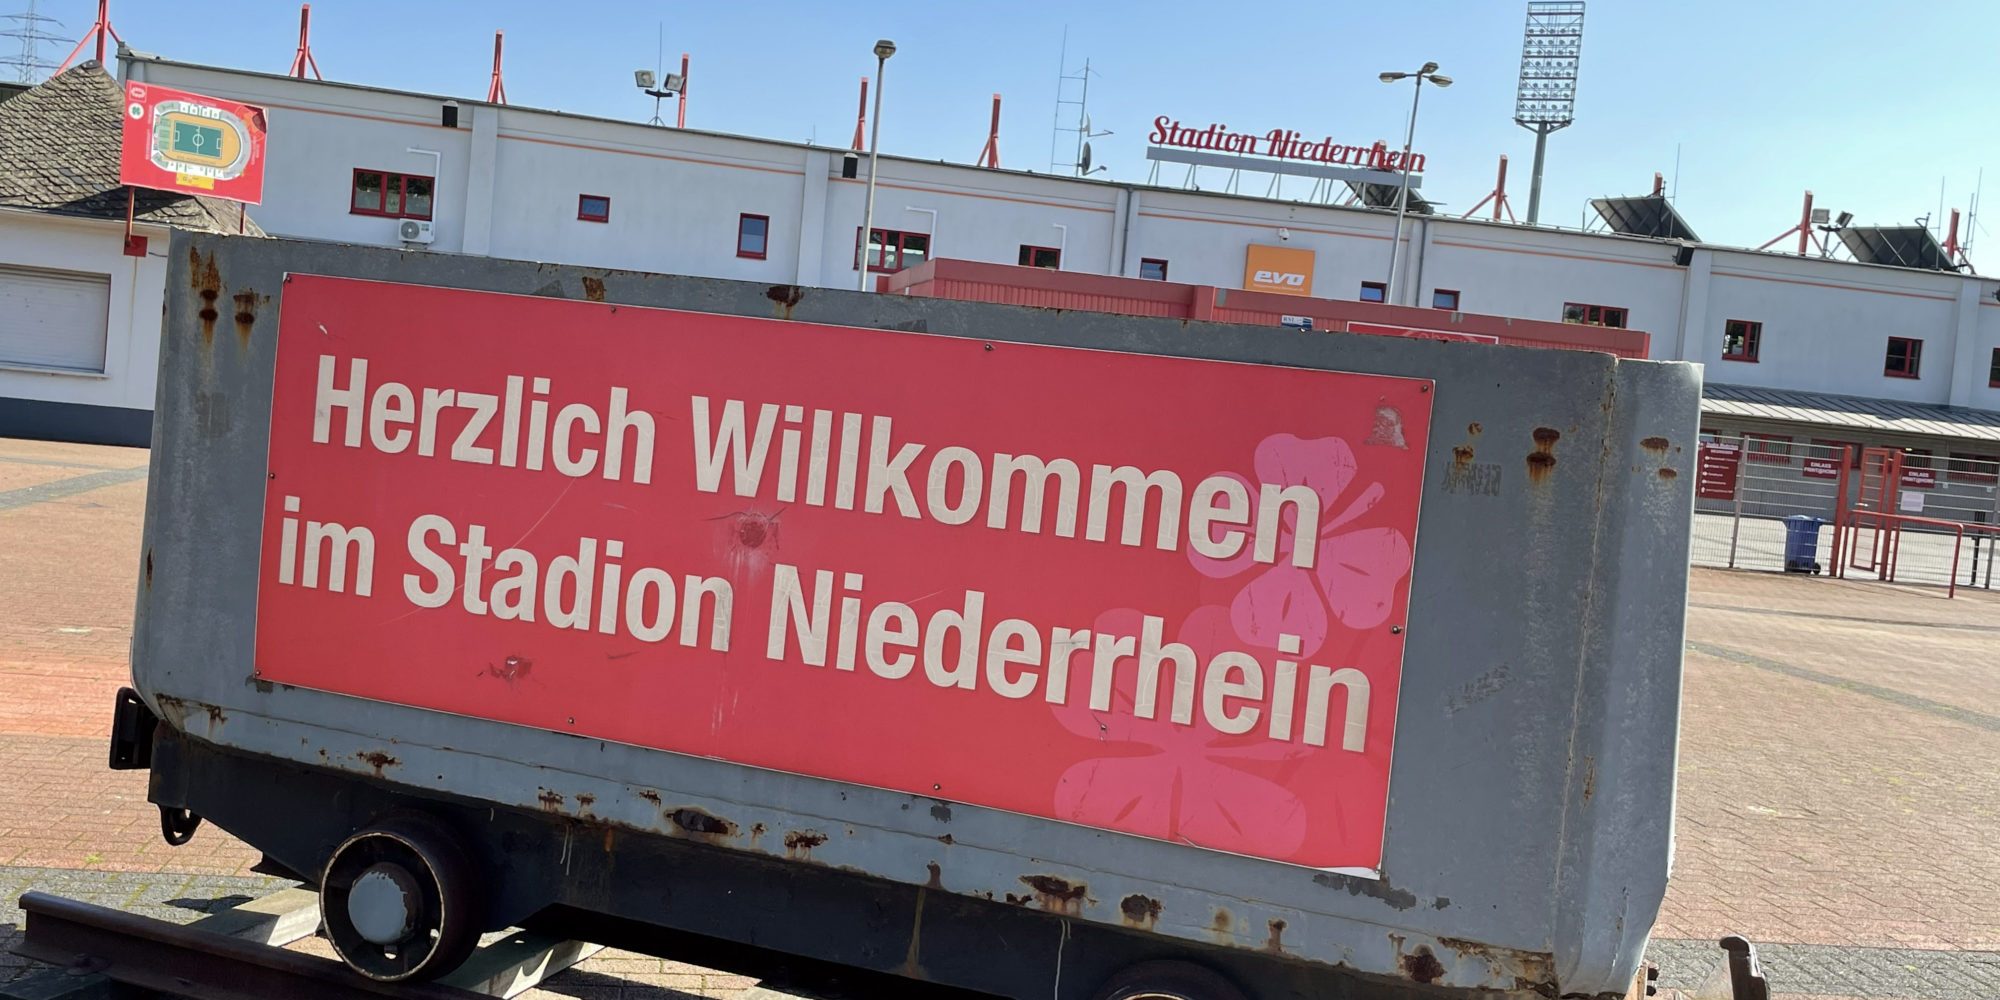 Resim, Oberhausen'deki Niederrhein stadyumunun önündeki bir mayın arabasını gösteriyor.